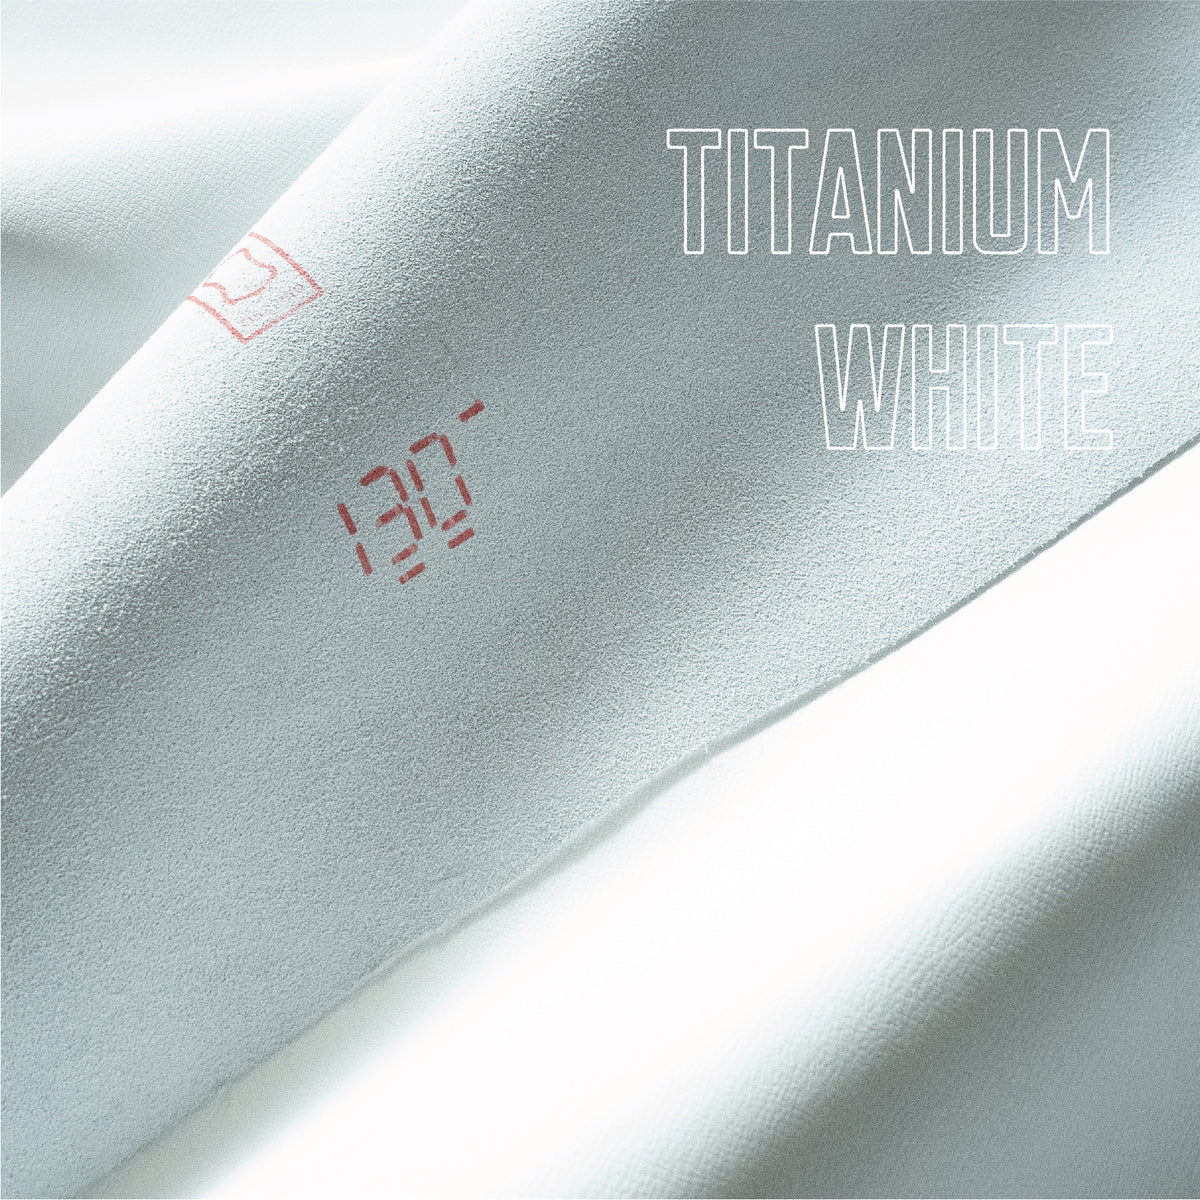 Invincible White] Derby Titanium White